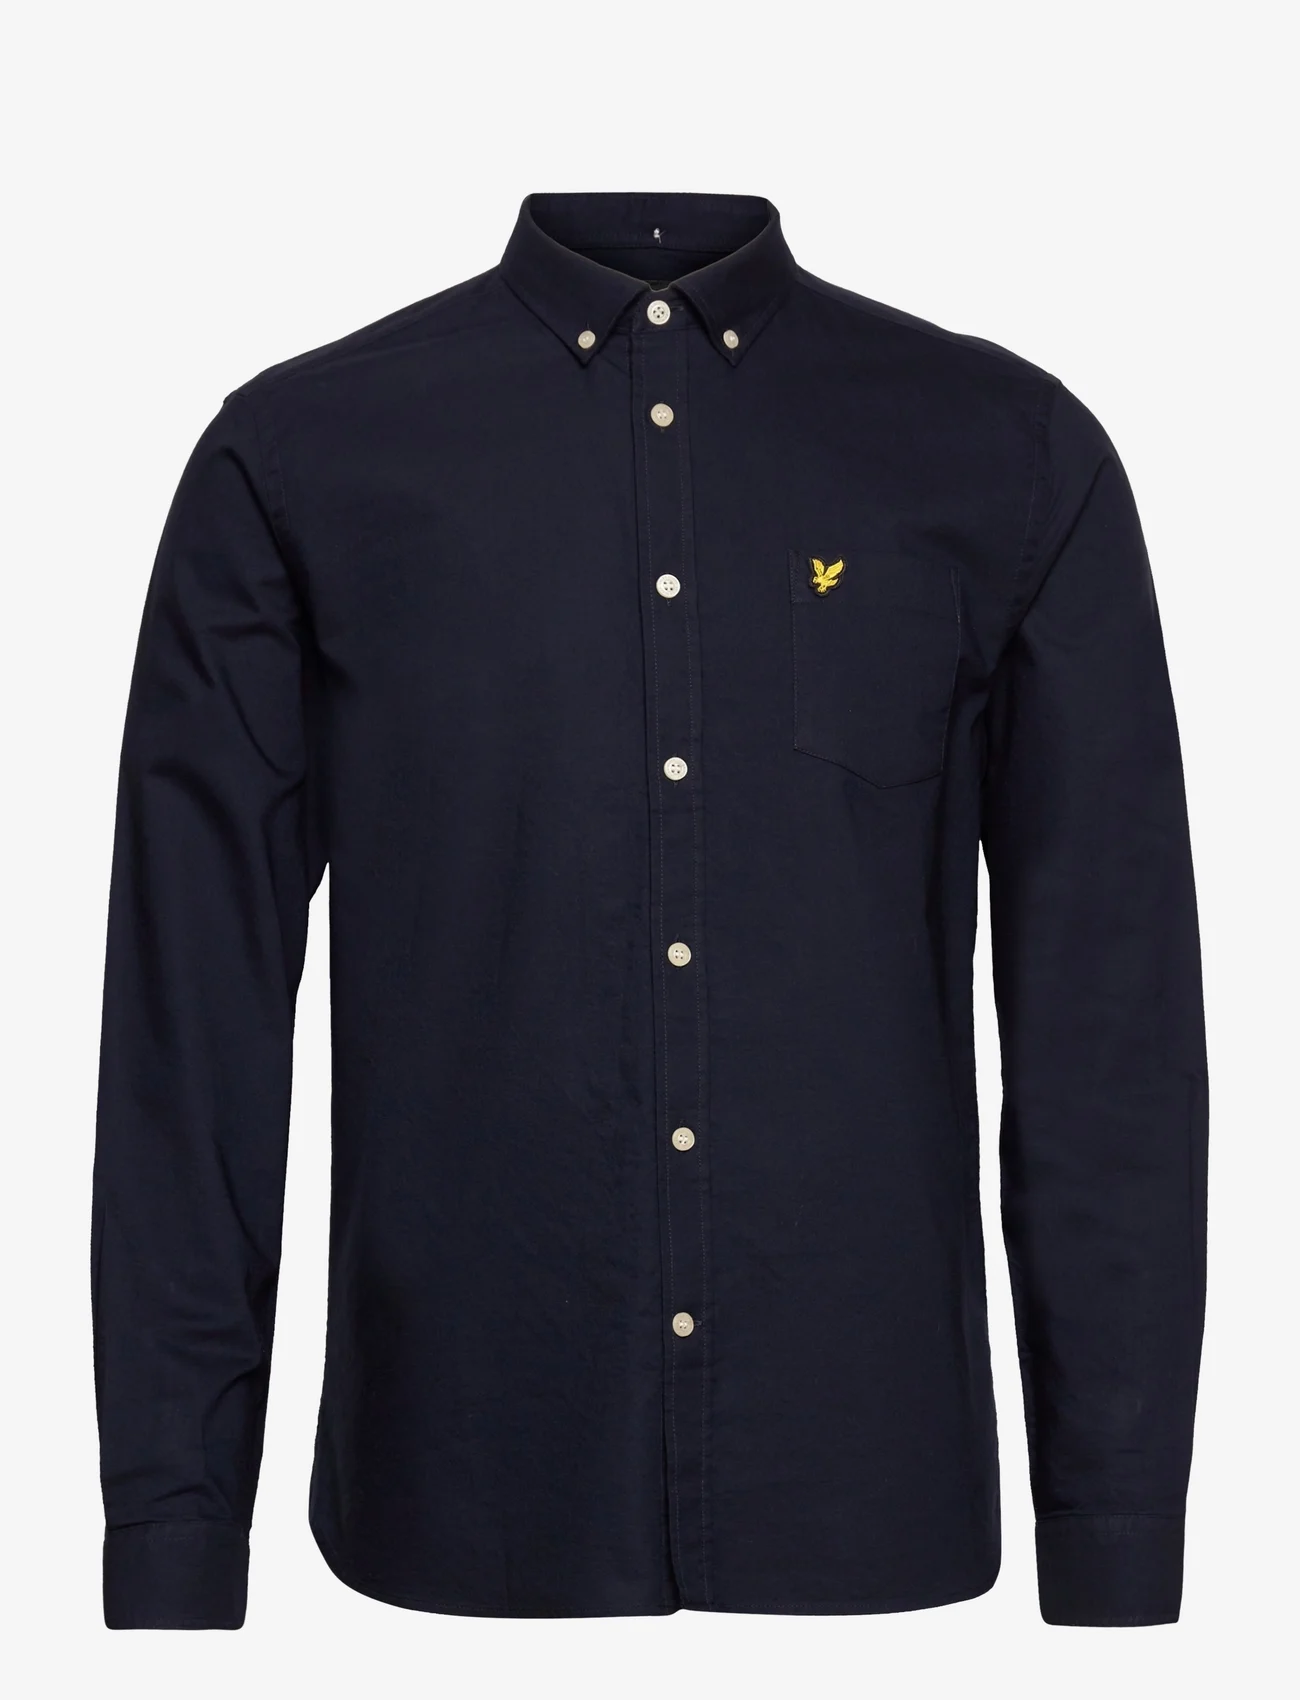 Lyle & Scott - Regular Fit Light Weight Oxford Shirt - oxford-hemden - dark navy - 0